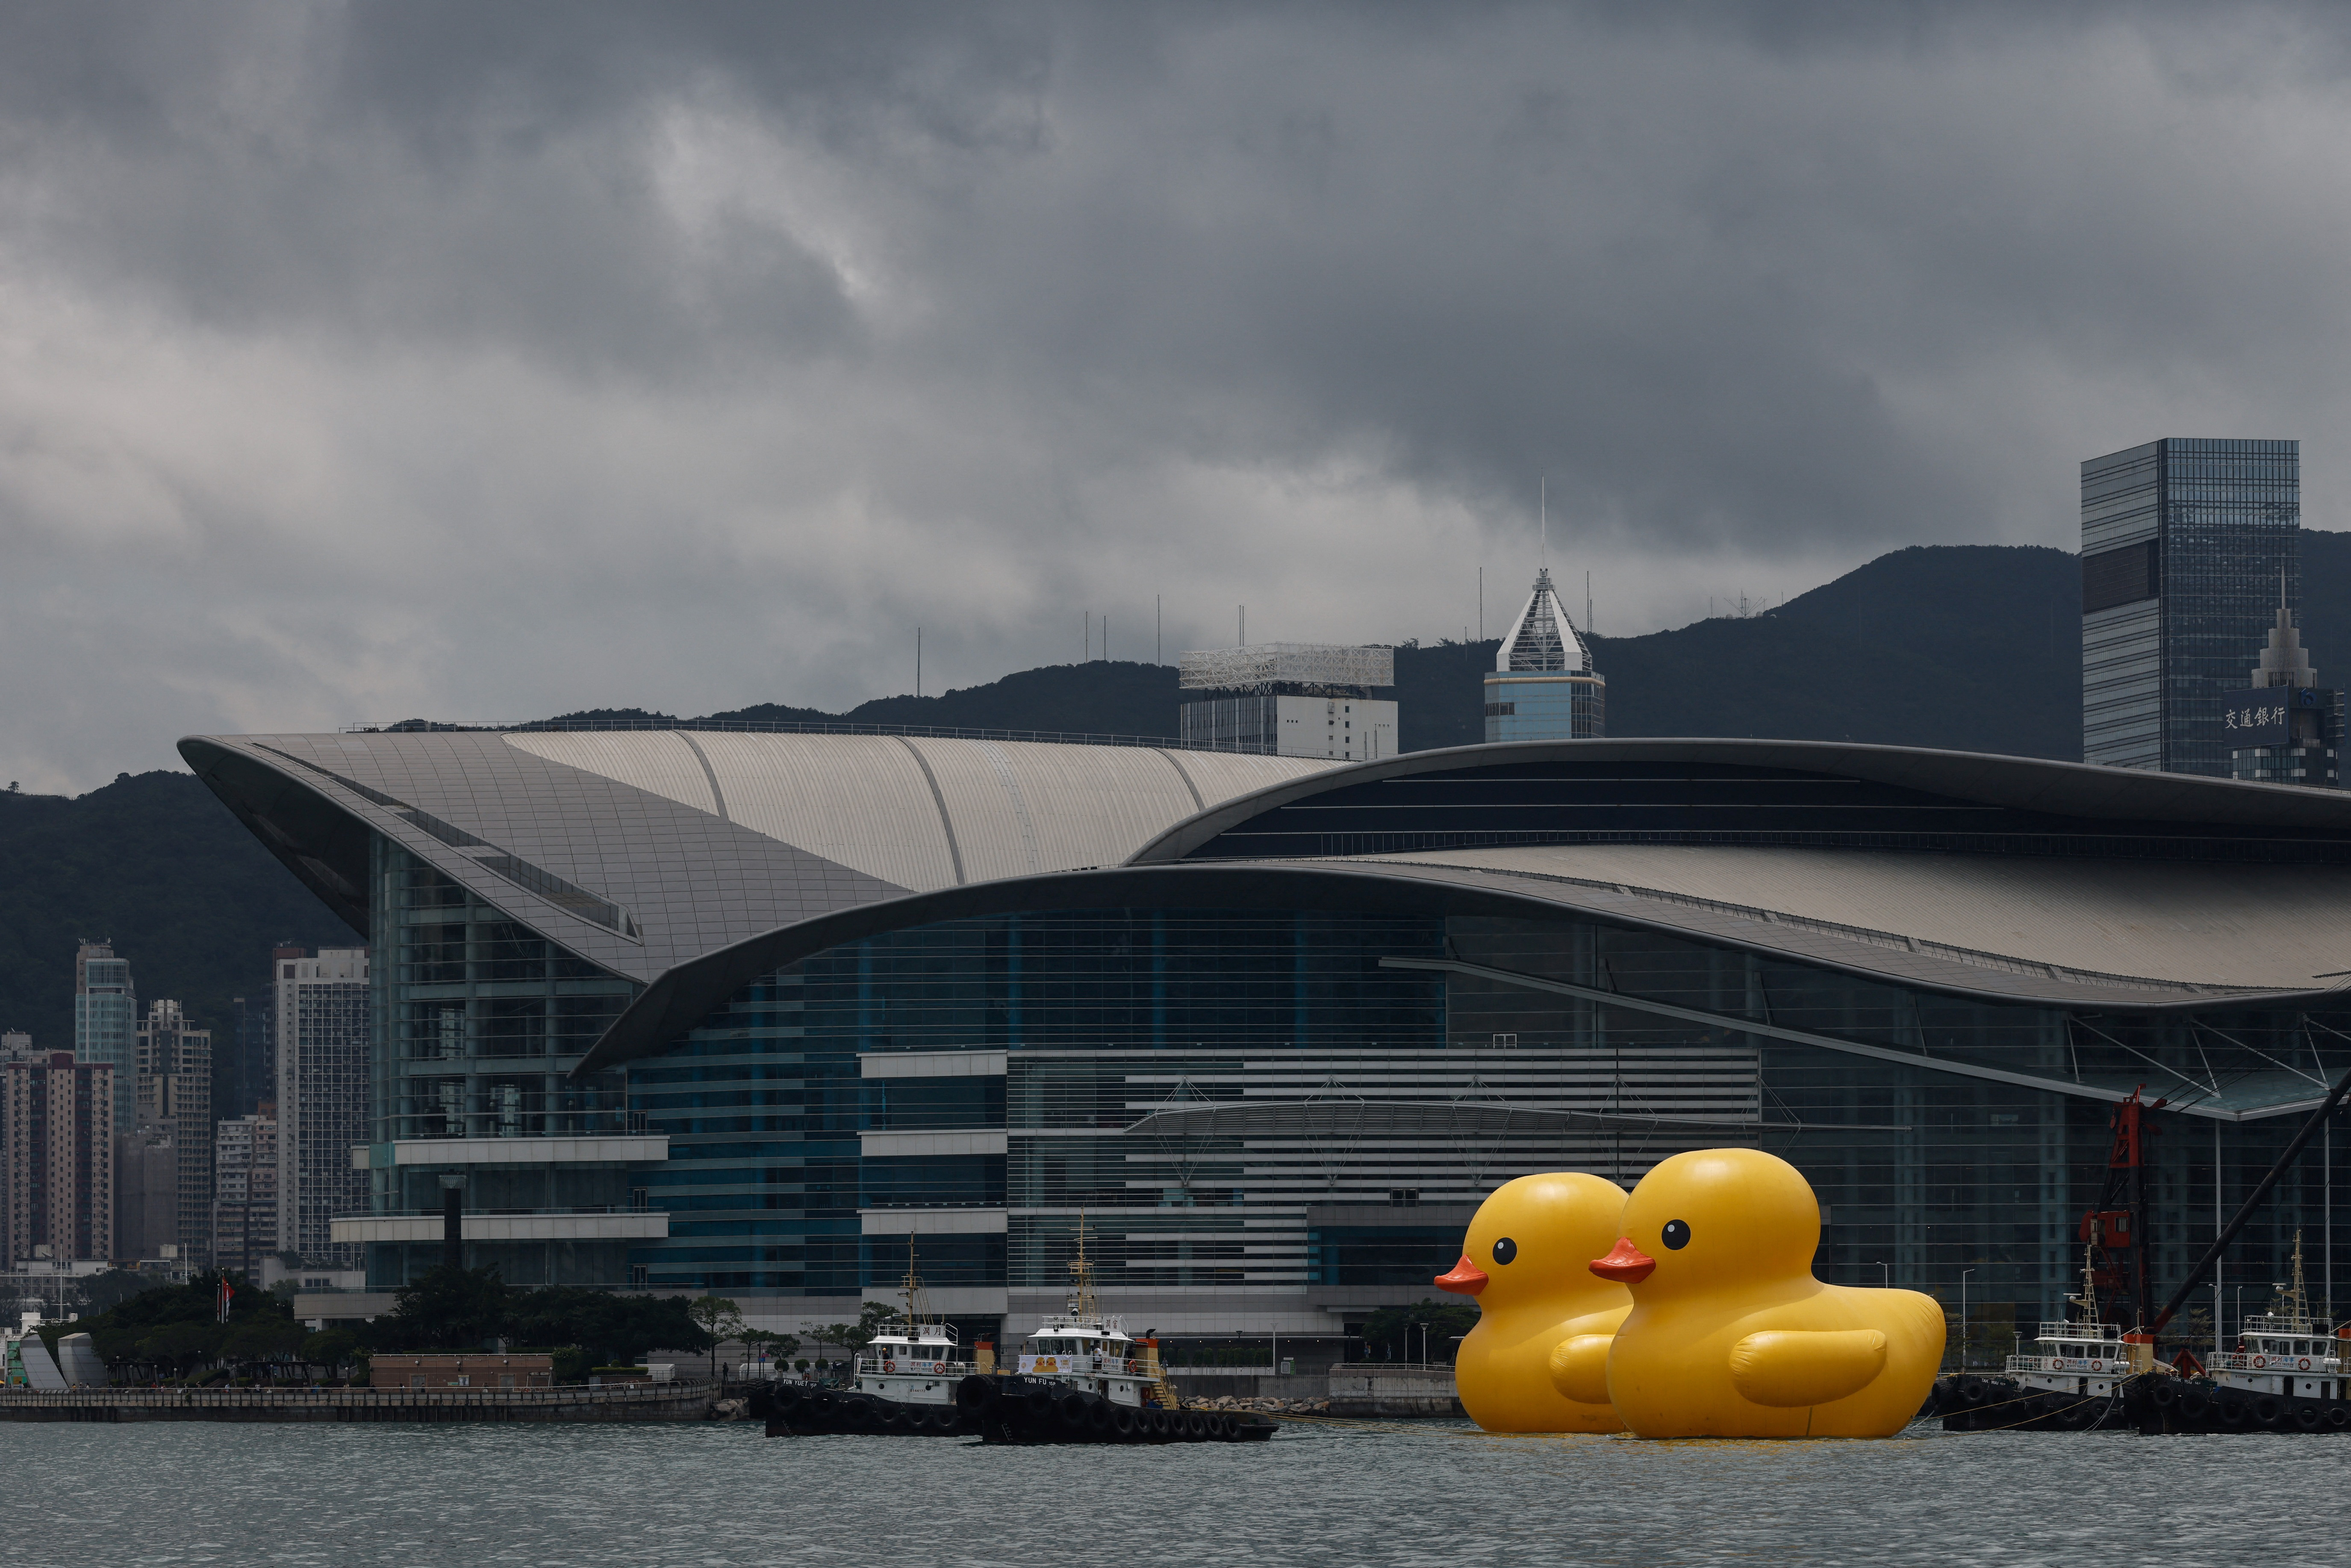 Hong Kong's giant rubber duck